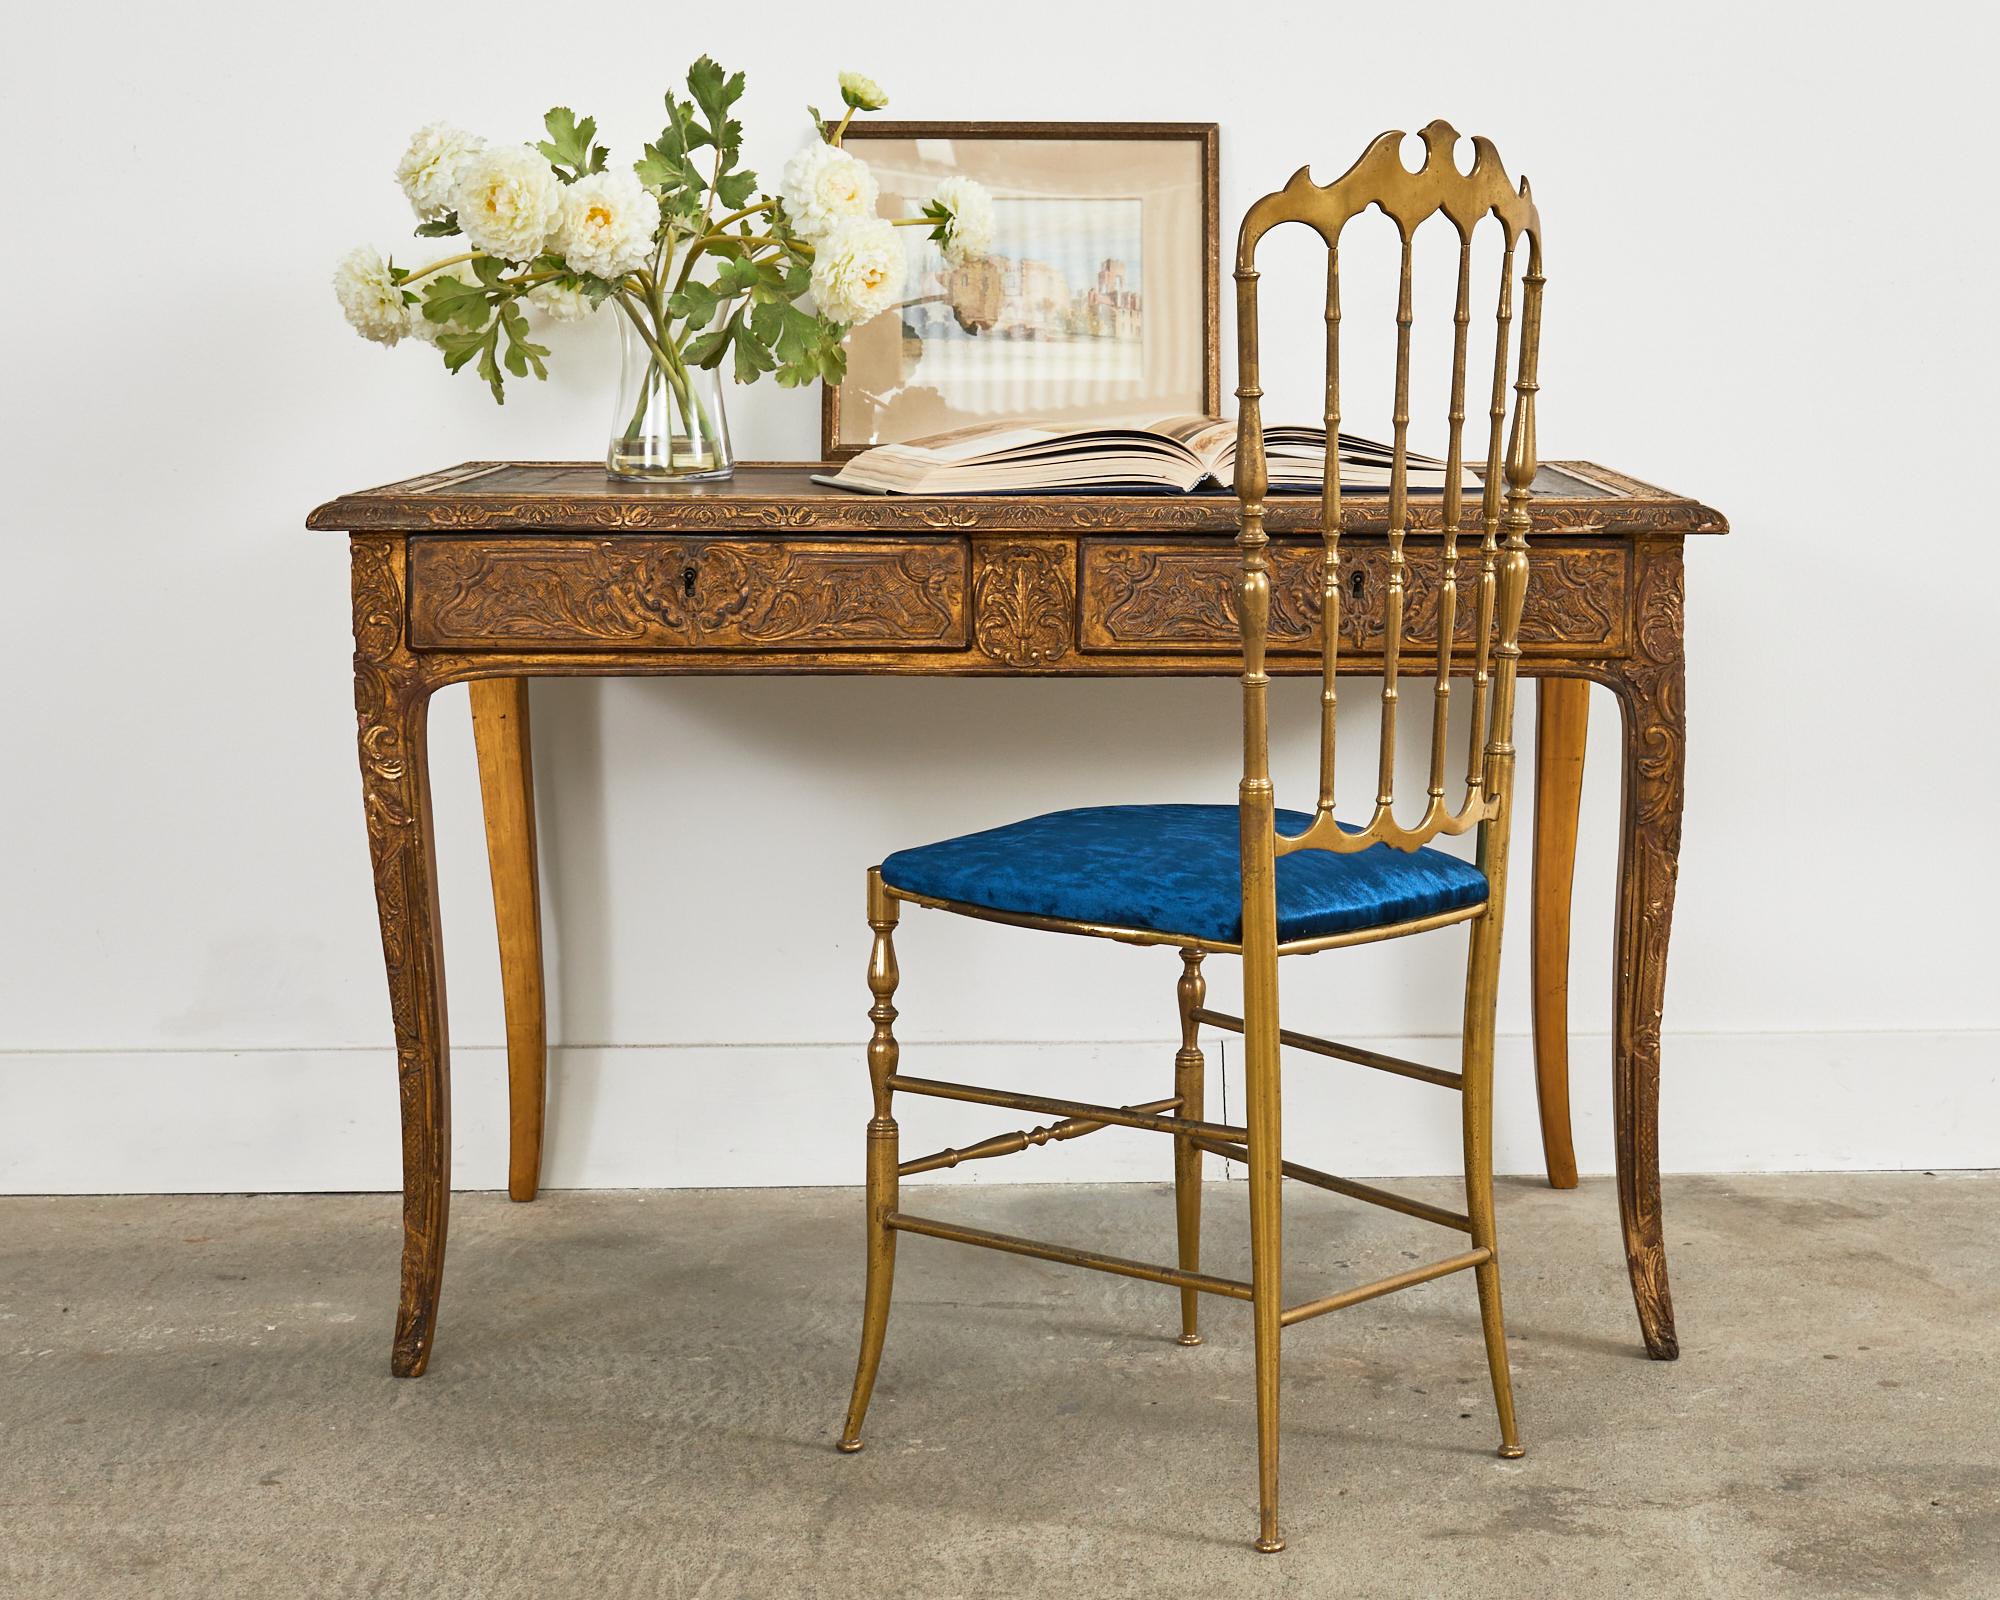 Opulenter französischer Schreibtisch aus dem 19. Jahrhundert, hergestellt im großen Louis XV-Stil. Das Holzgestell dieses außergewöhnlichen Tisches ist furniert und geschnitzt mit komplizierten Blumen-, Blatt- und Akanthusmotiven in einem